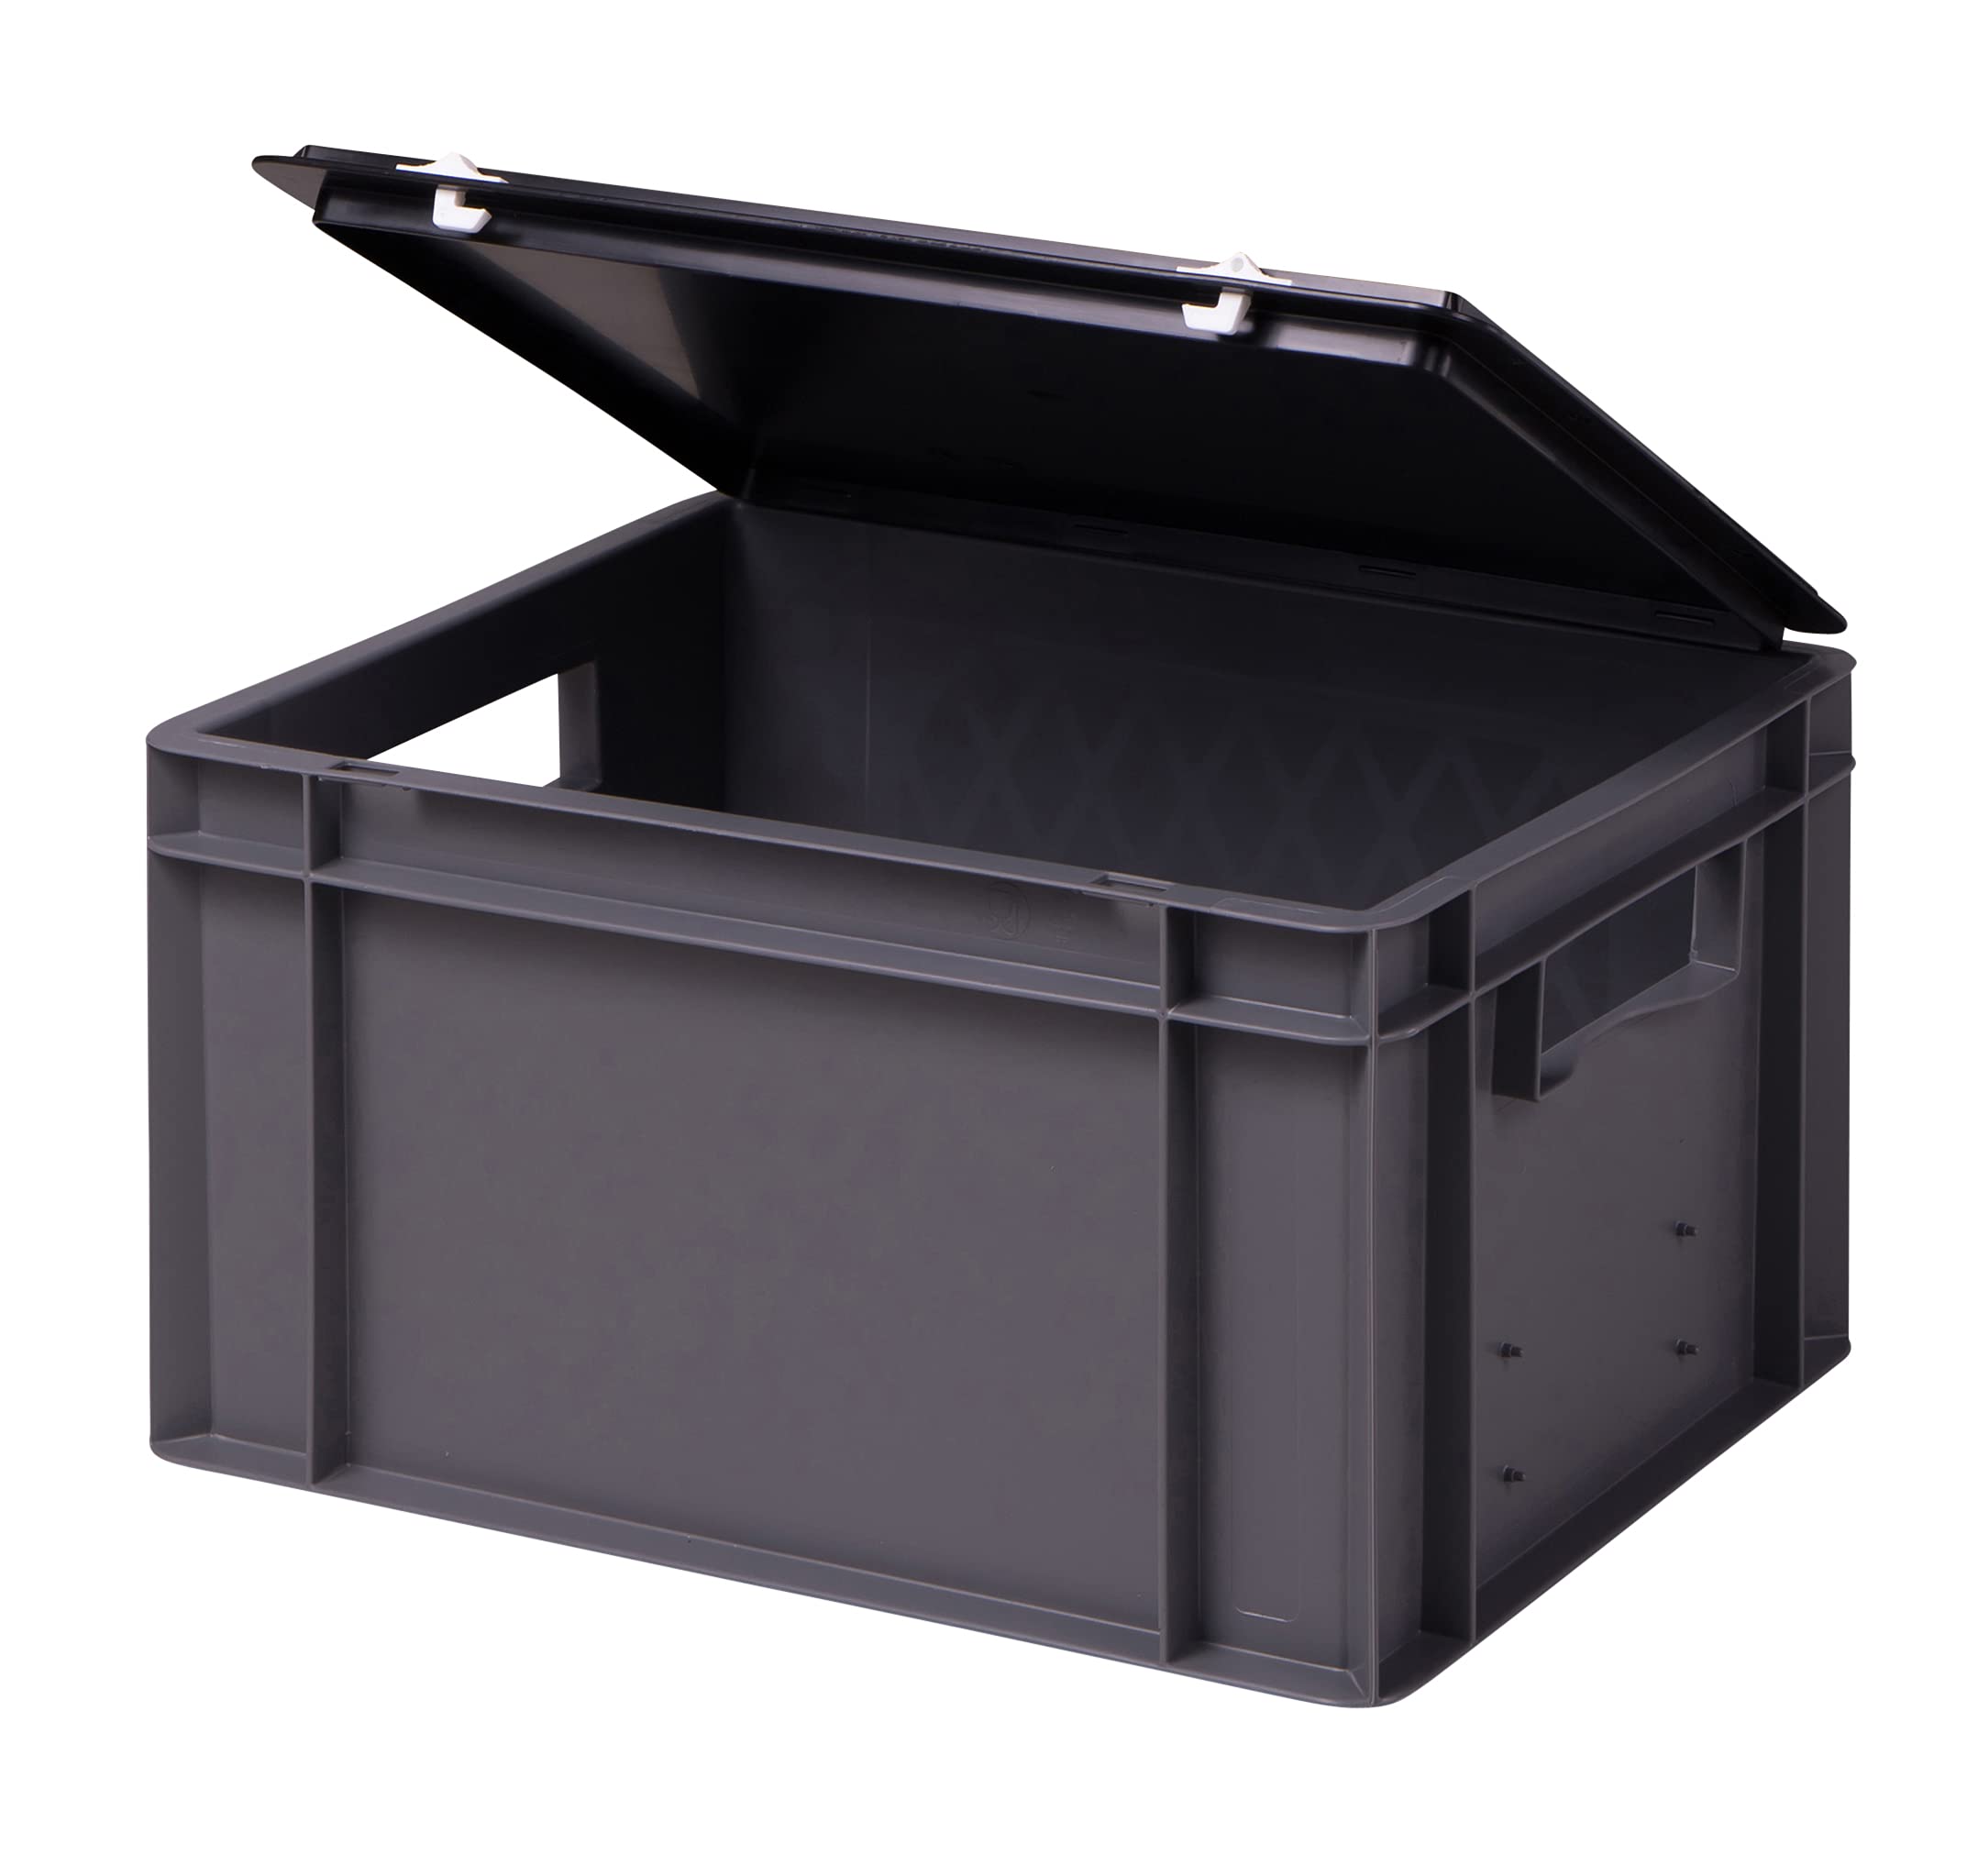 1a-TopStore Stabile Profi Aufbewahrungsbox Stapelbox Eurobox Stapelkiste mit Deckel, Kunststoffkiste lieferbar in 5 Farben und 21 Größen für Industrie, Gewerbe, Haushalt (grau, 40x30x22 cm)